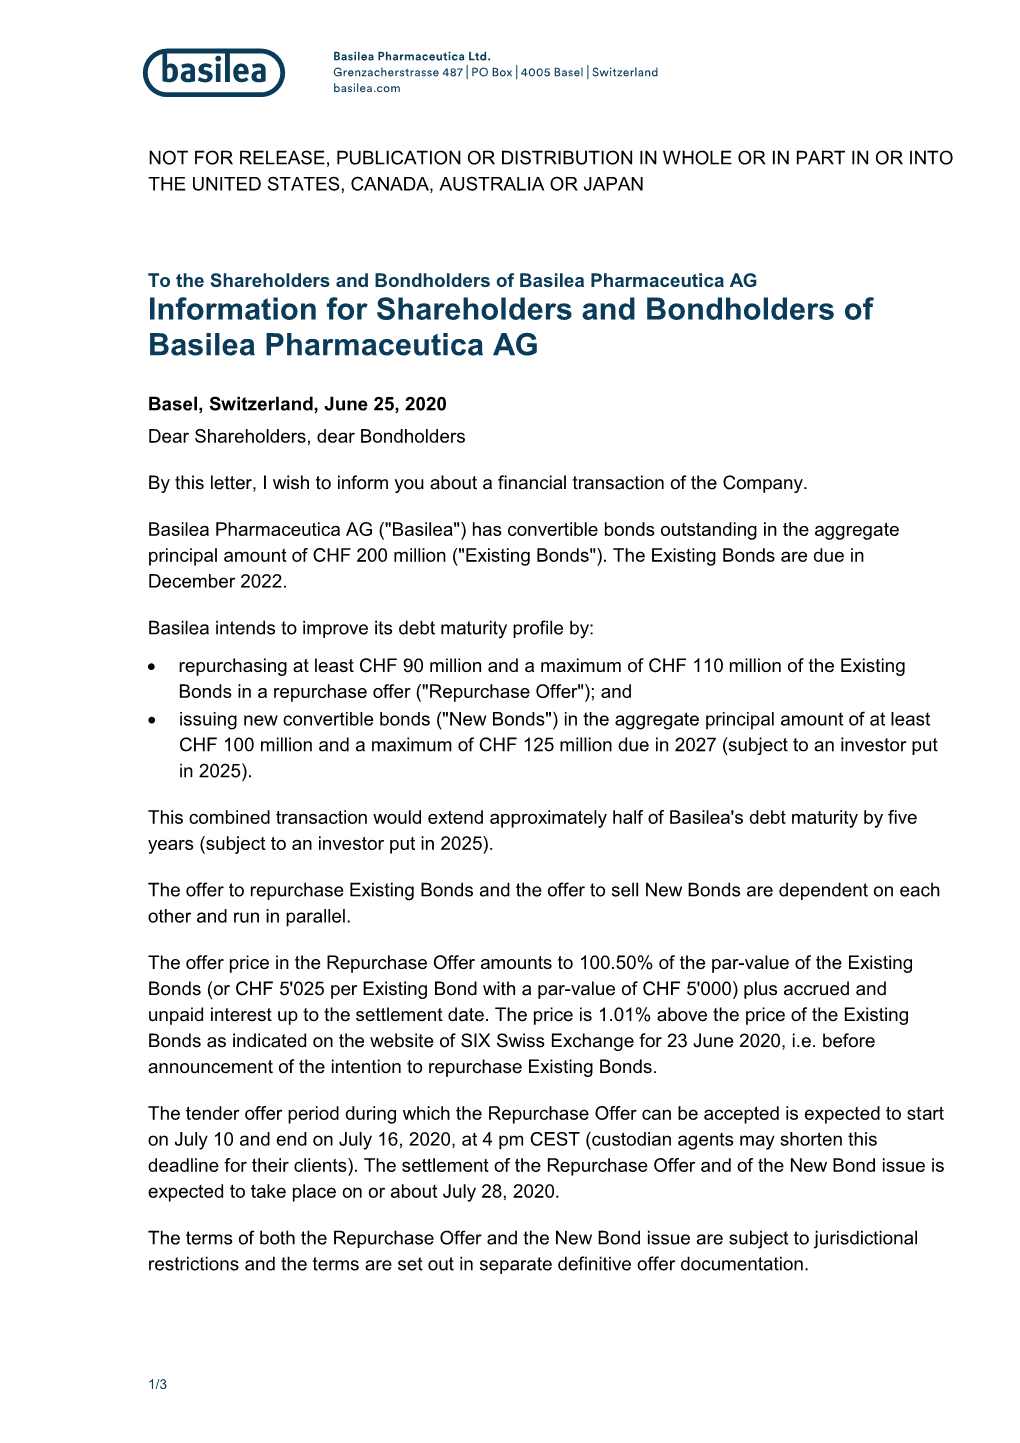 Information for Shareholders and Bondholders of Basilea Pharmaceutica AG